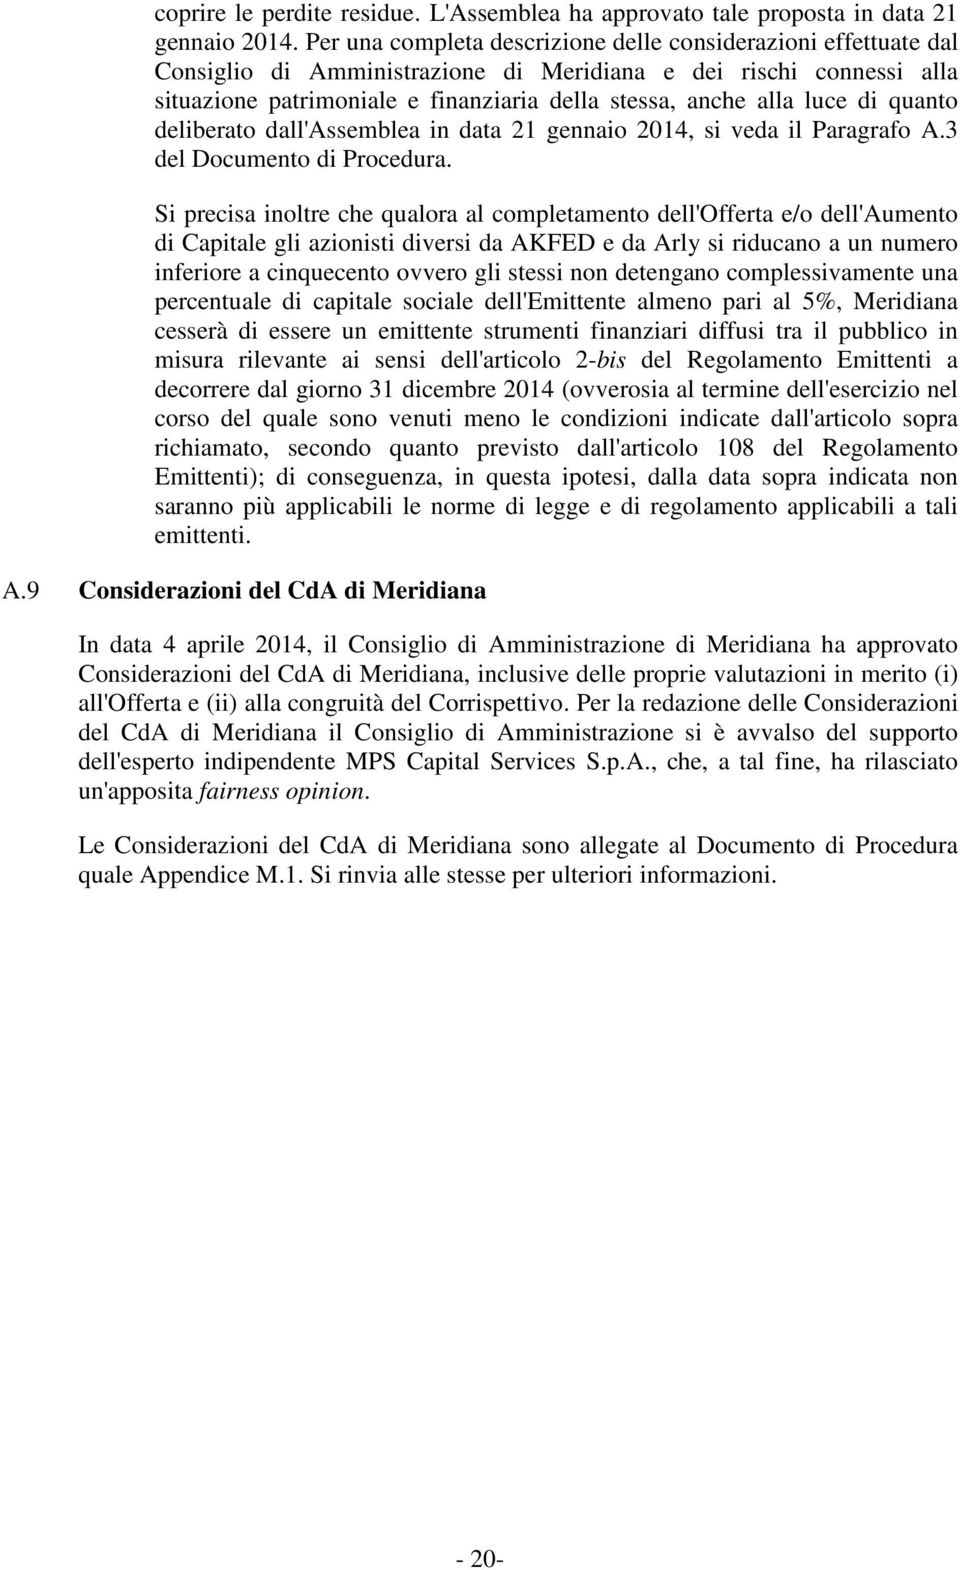 luce di quanto deliberato dall'assemblea in data 21 gennaio 2014, si veda il Paragrafo A.3 del Documento di Procedura.